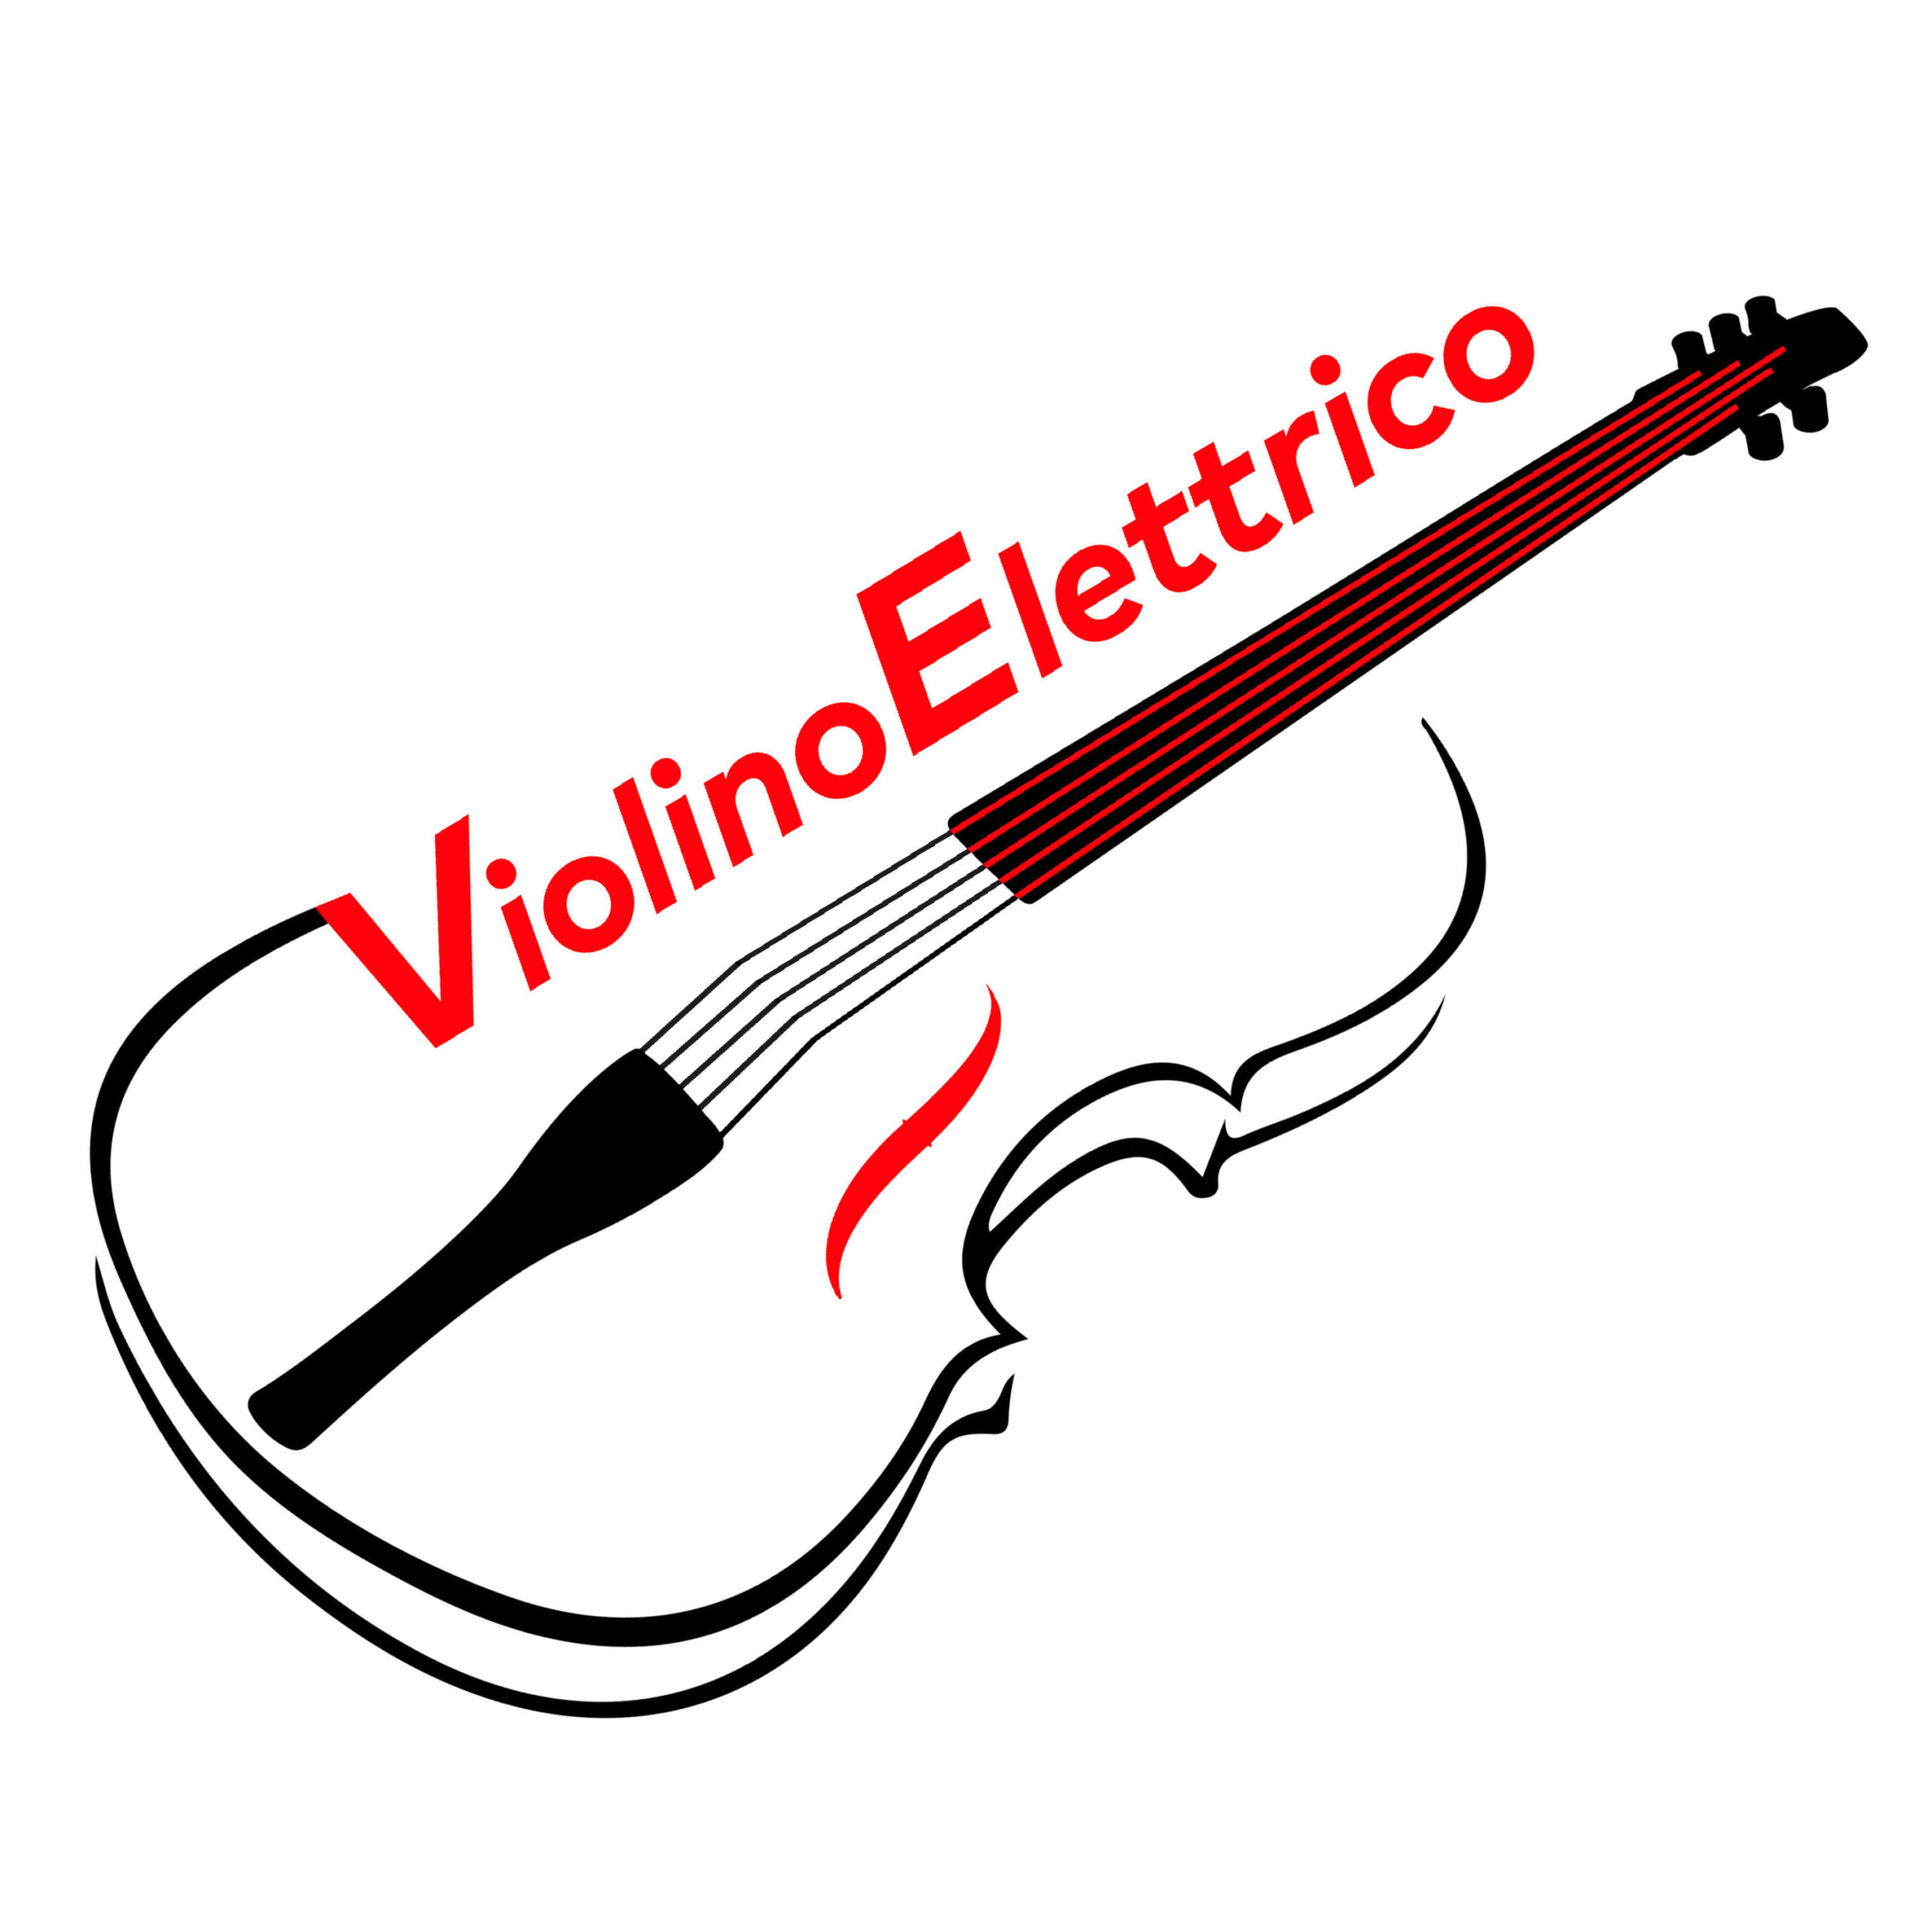 ViolinoElettrico